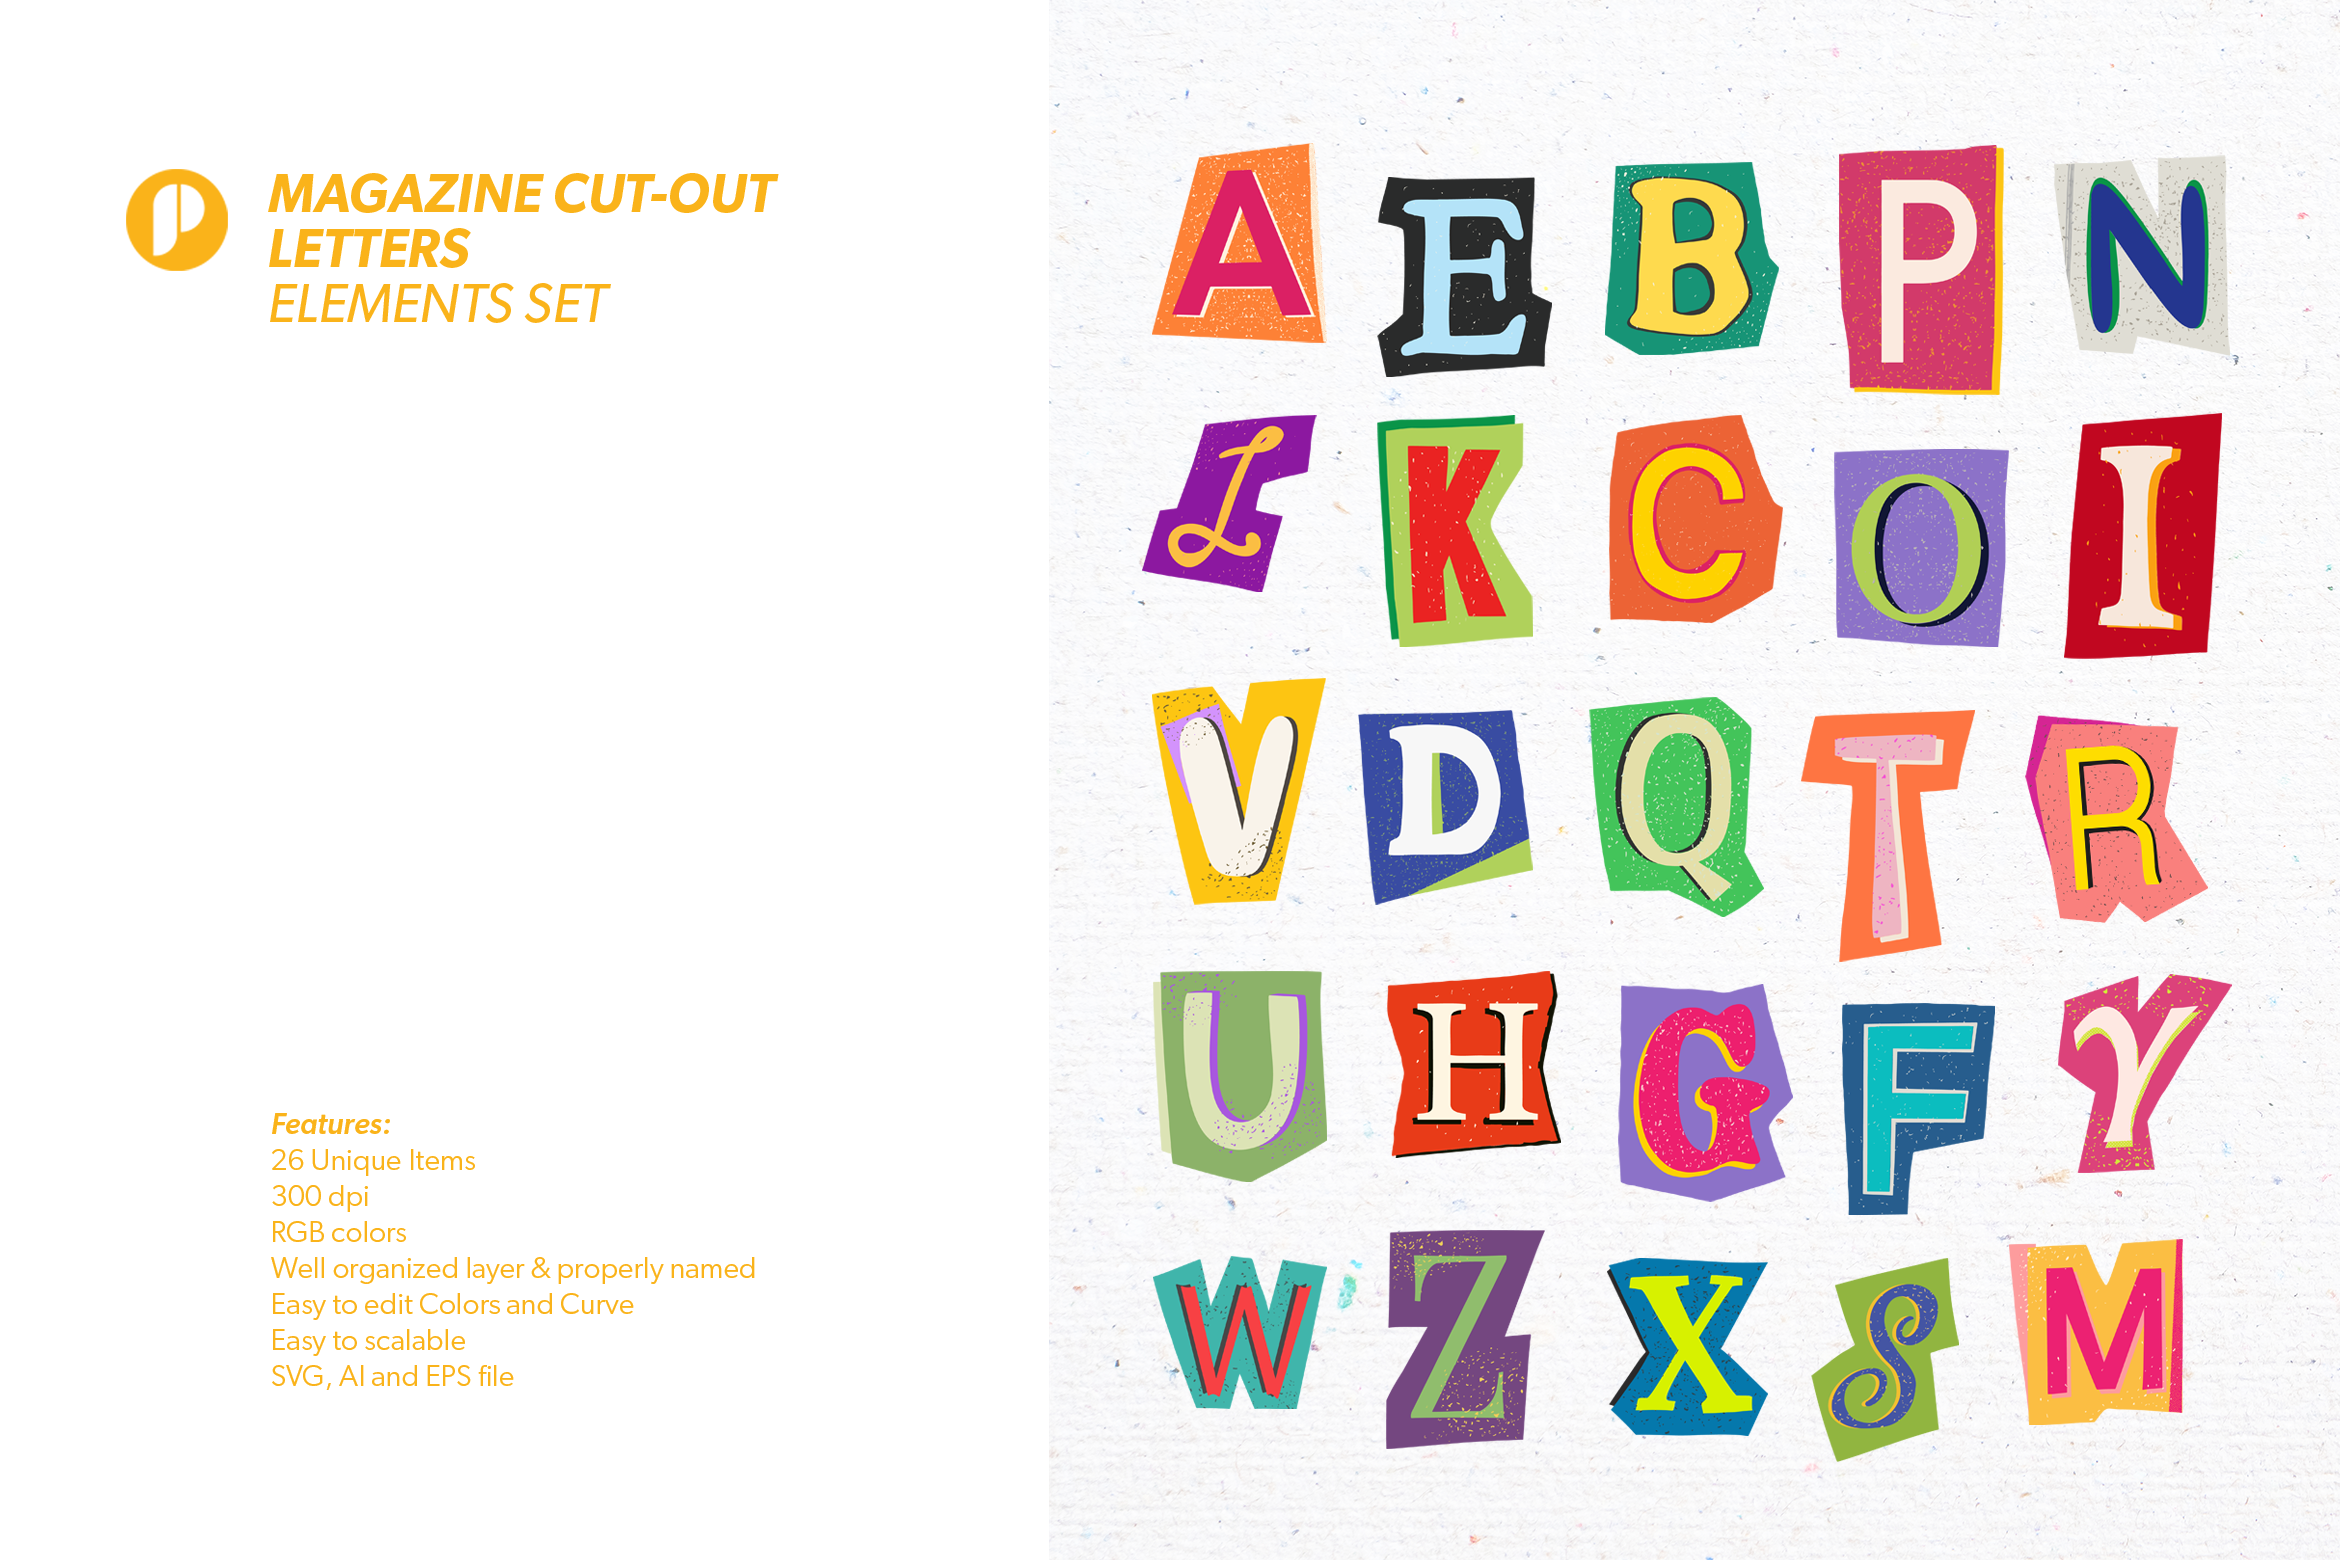 Colorful Magazine Cut-out Letters Elements Set Design Templates